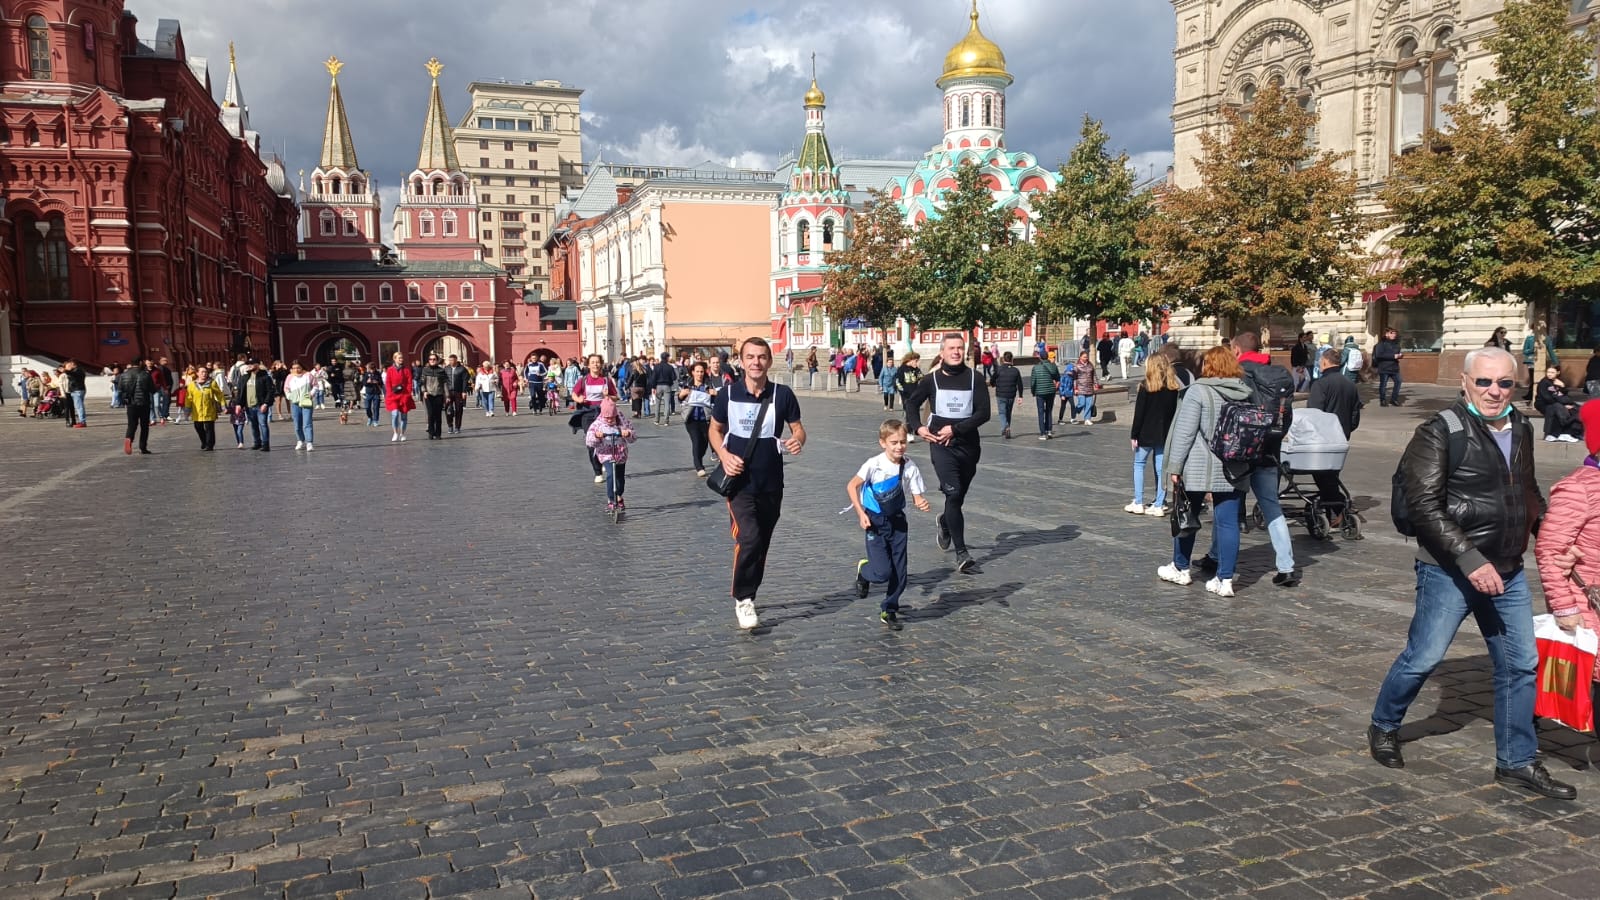 Сегодня на красной площади мероприятия в москве